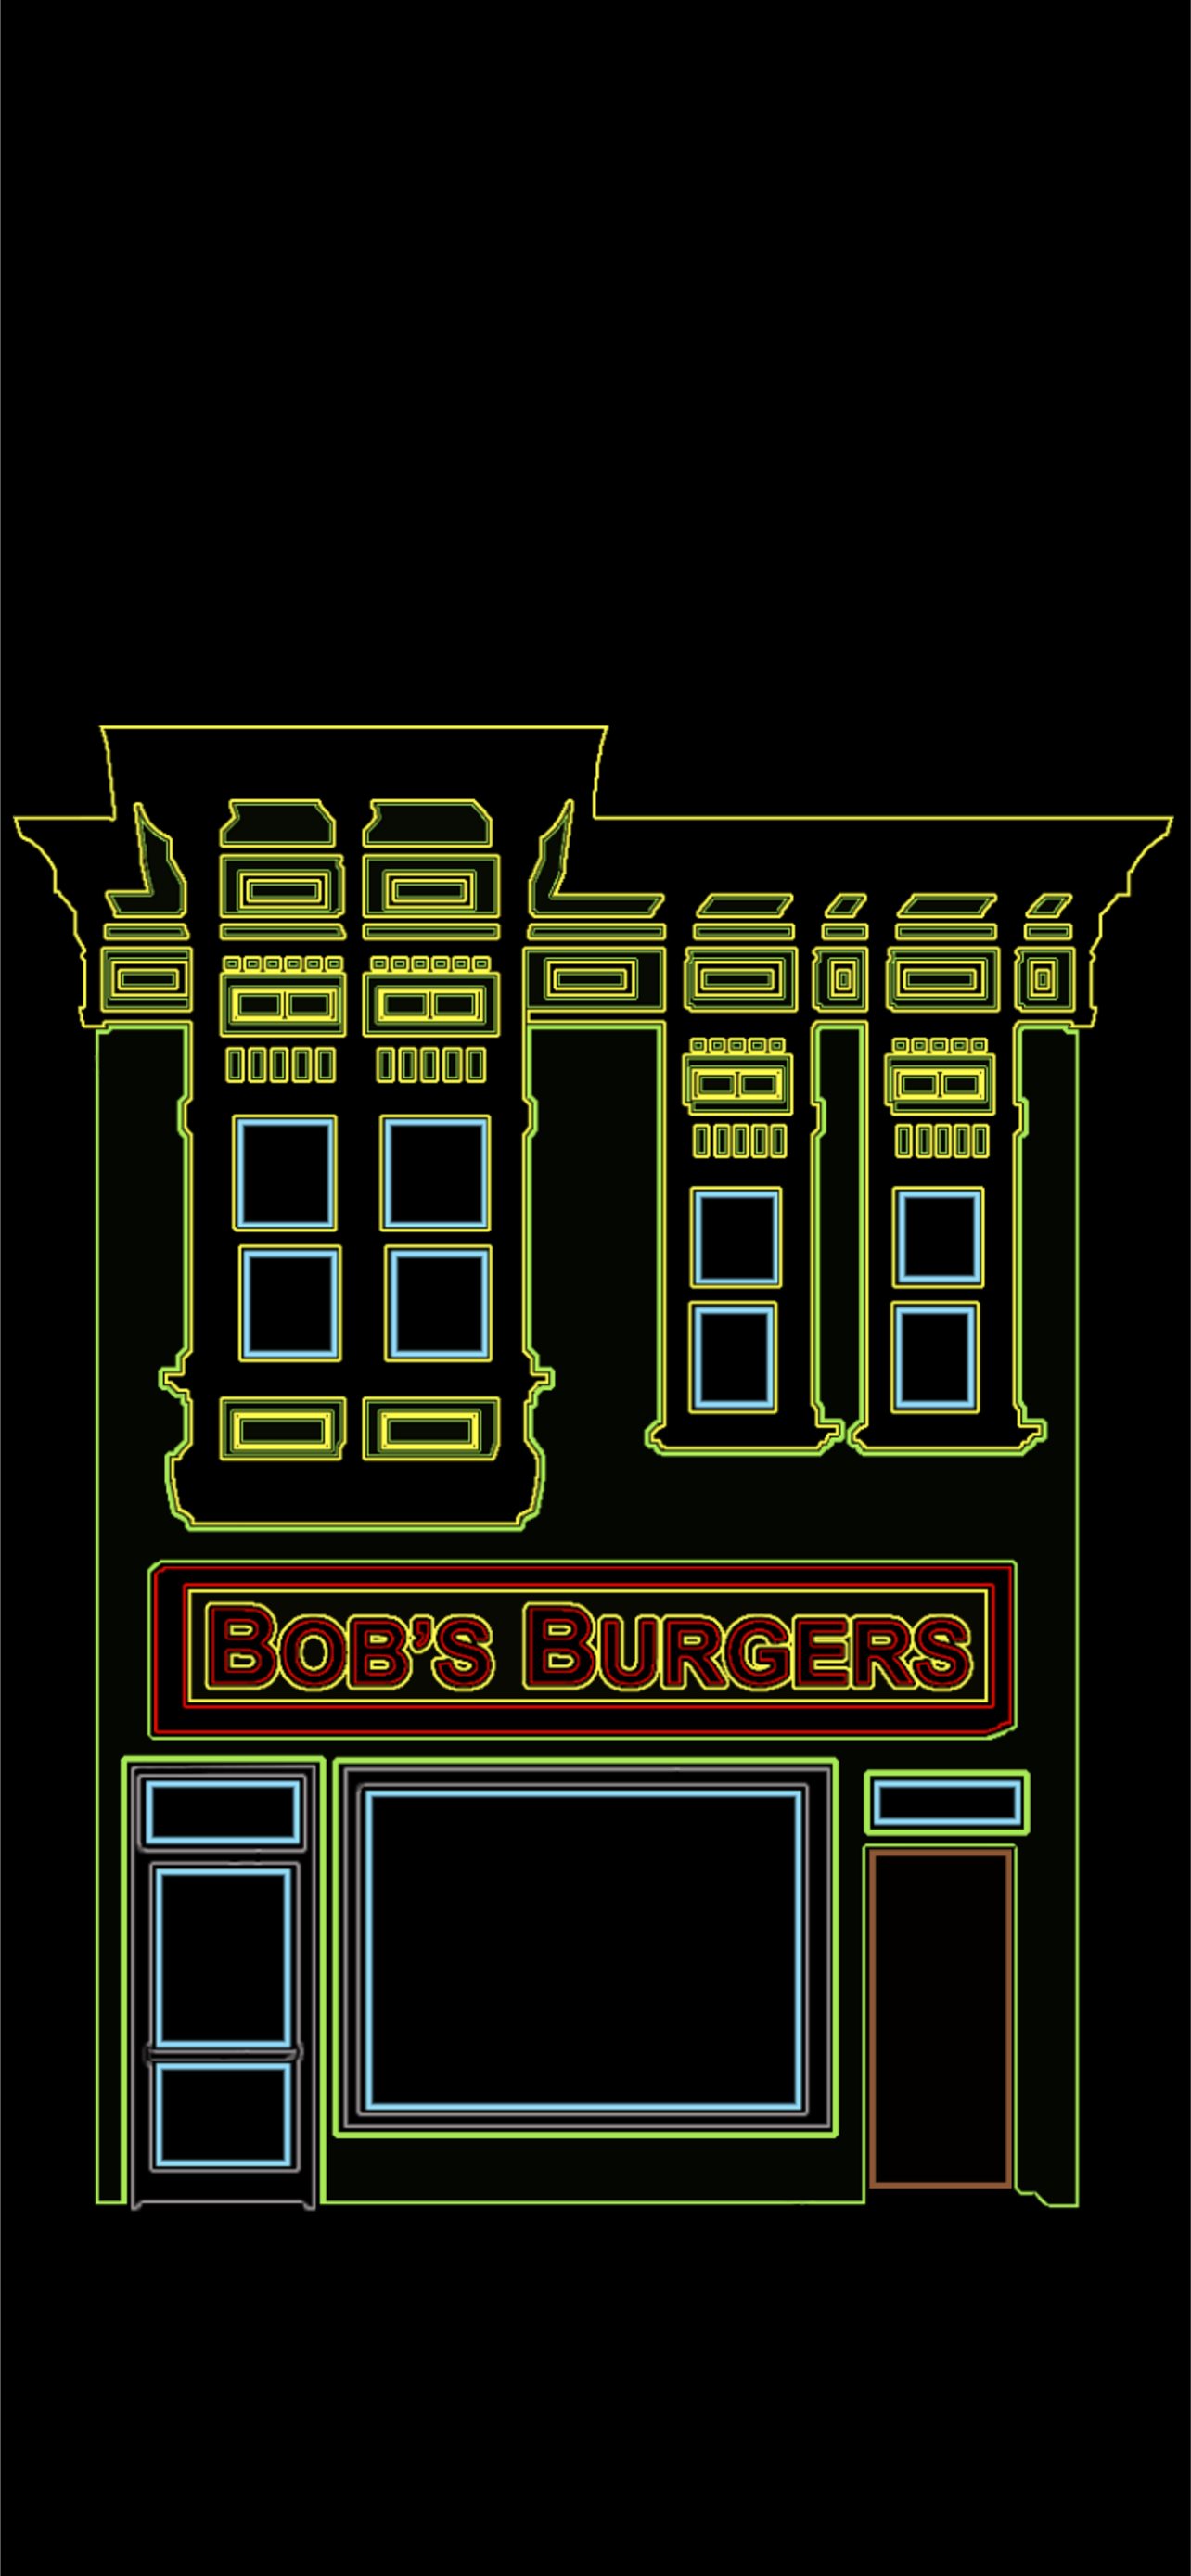 Bobs Burgers wallpaper by iJLucas  Download on ZEDGE  062d